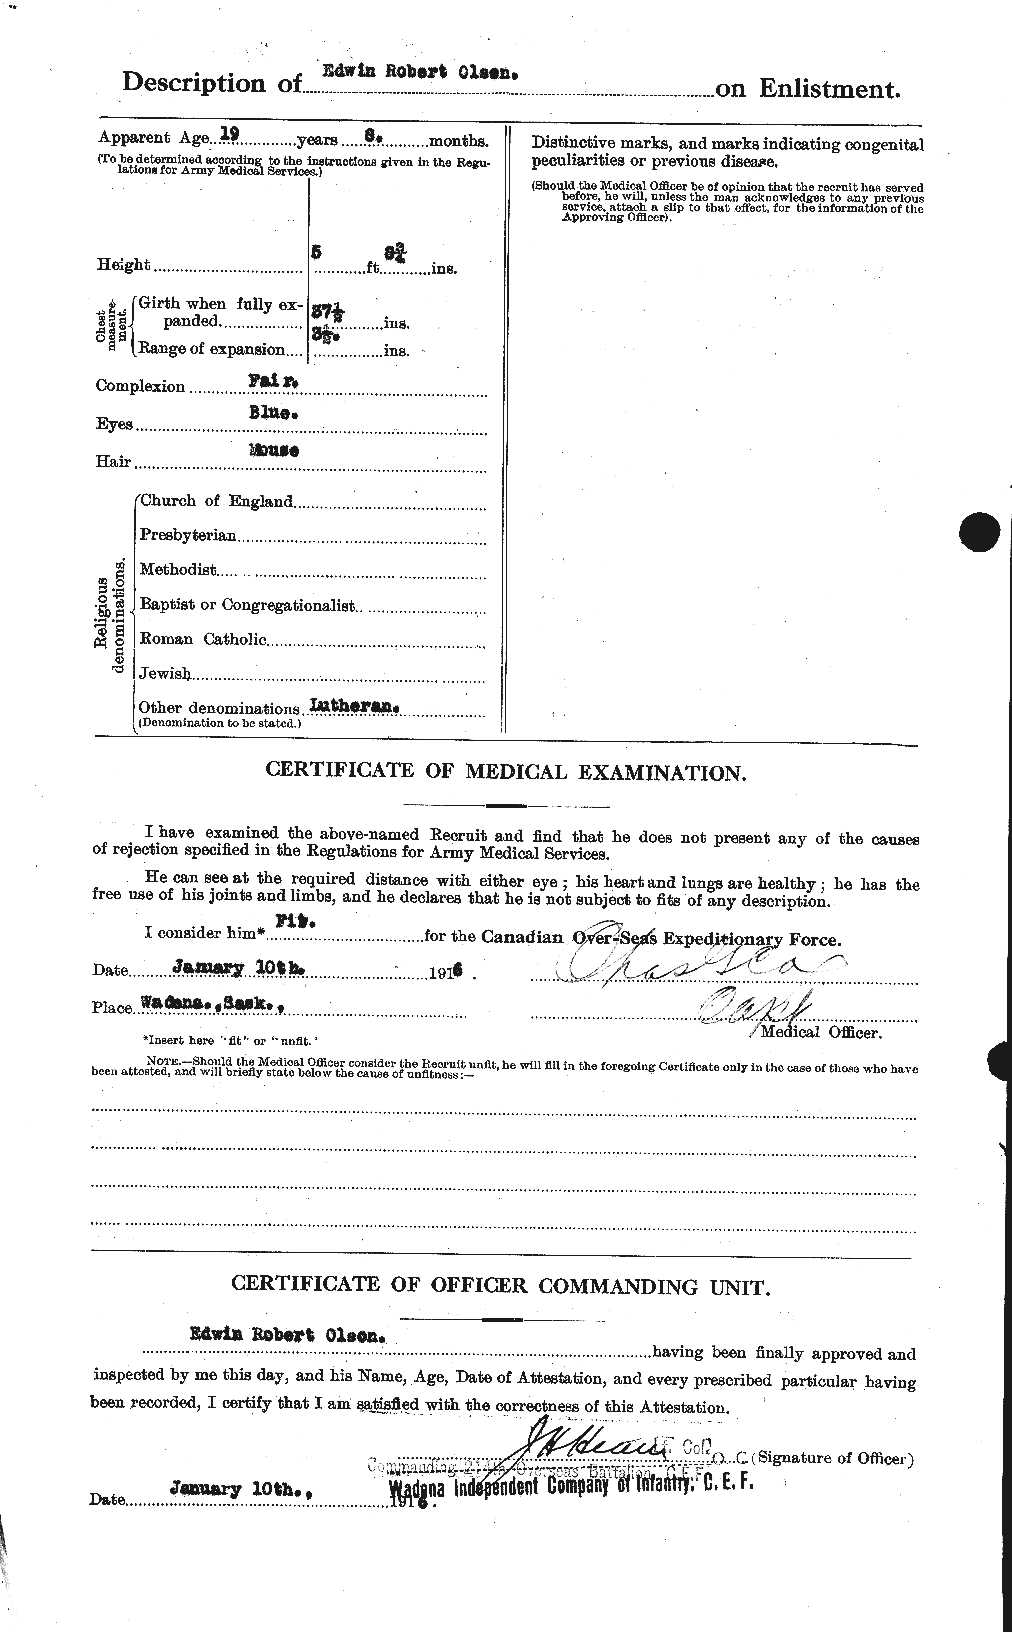 Dossiers du Personnel de la Première Guerre mondiale - CEC 555774b